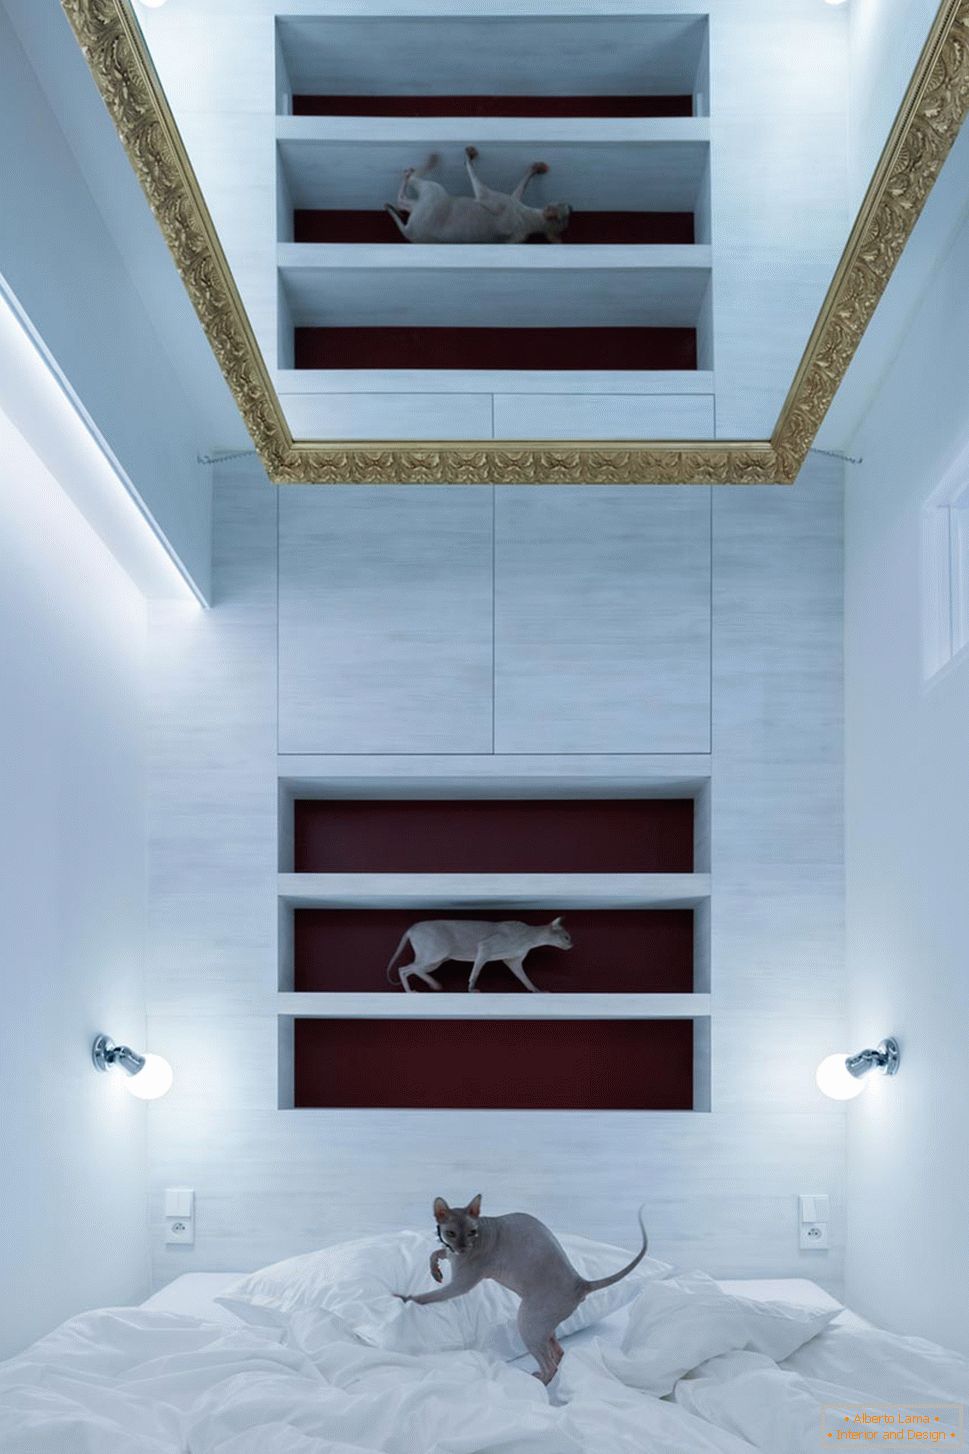 Design moderno de um pequeno apartamento - gatos no interior